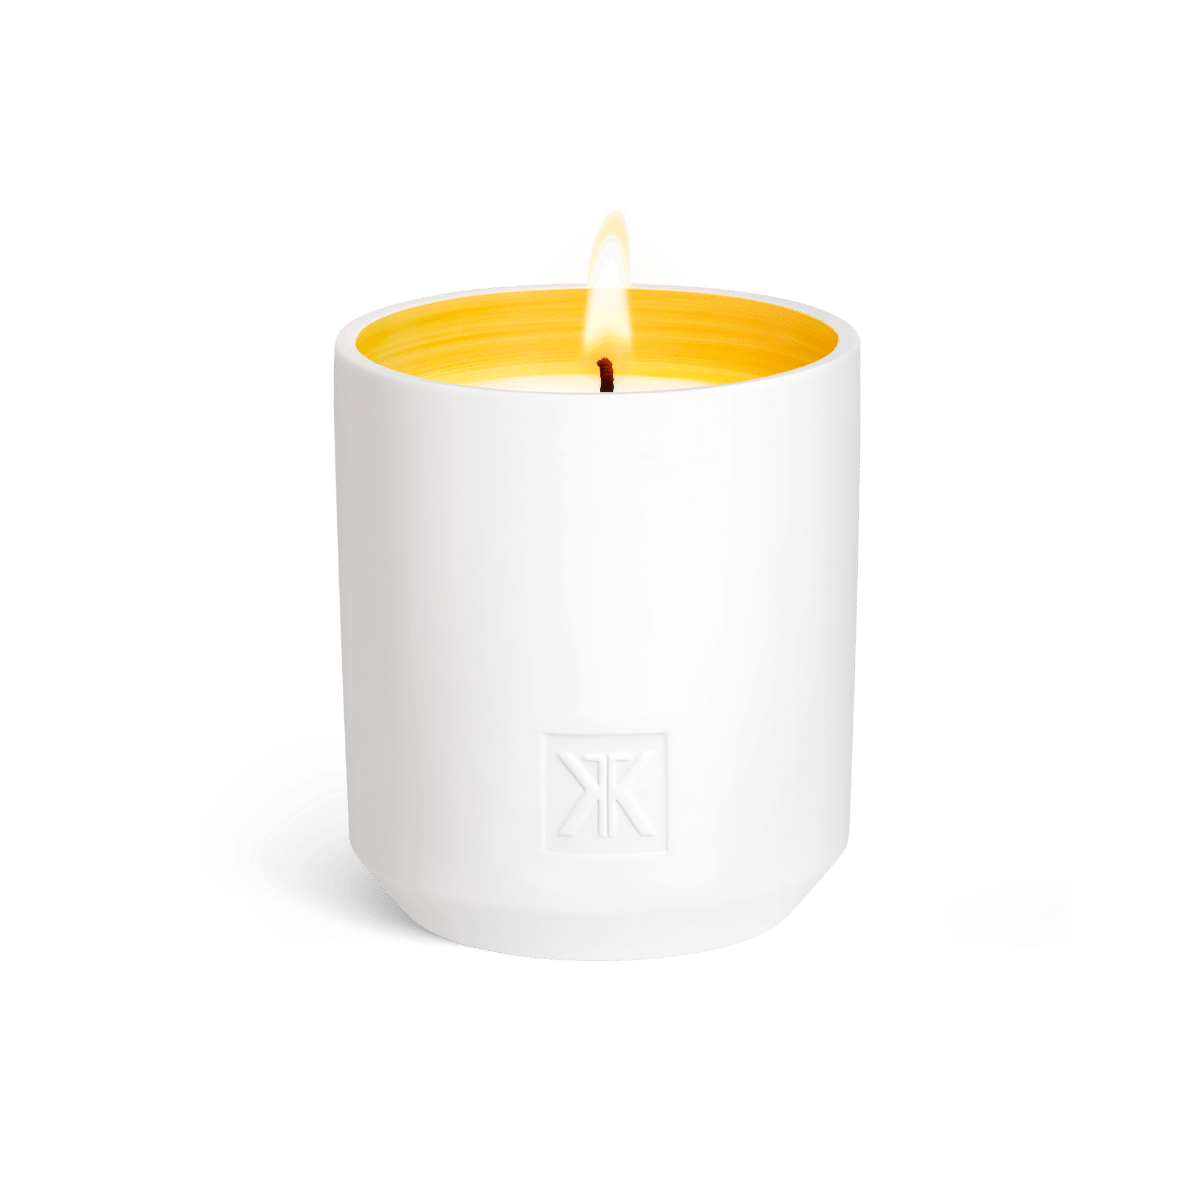 Maison Francis Kurkdjian - Les Tamaris scented candle